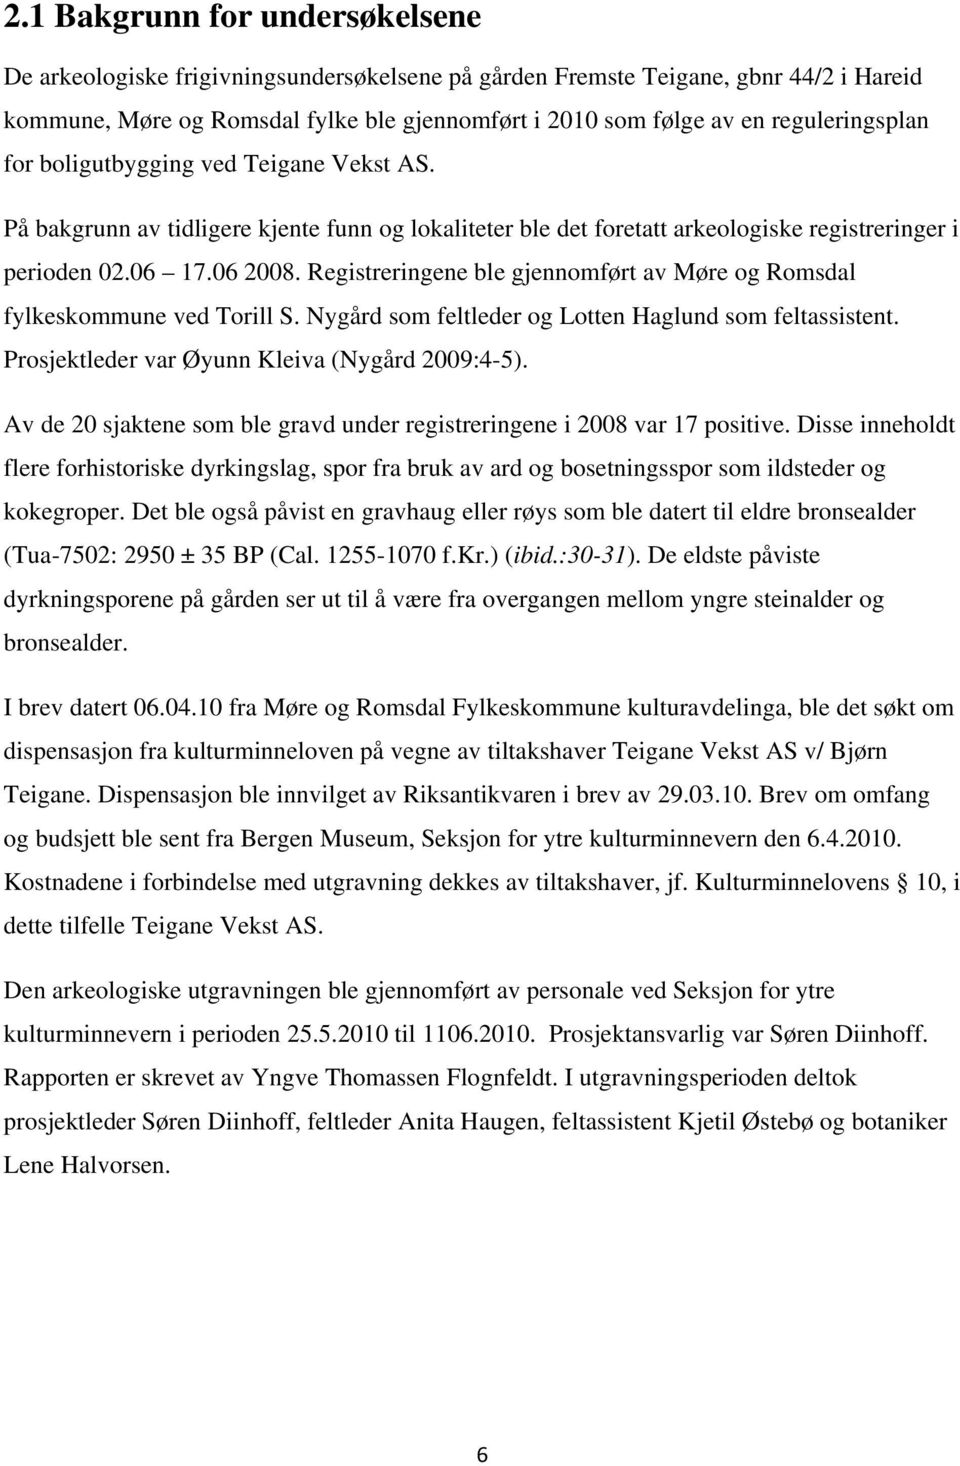 Registreringene ble gjennomført av Møre og Romsdal fylkeskommune ved Torill S. Nygård som feltleder og Lotten Haglund som feltassistent. Prosjektleder var Øyunn Kleiva (Nygård 2009:4-5).